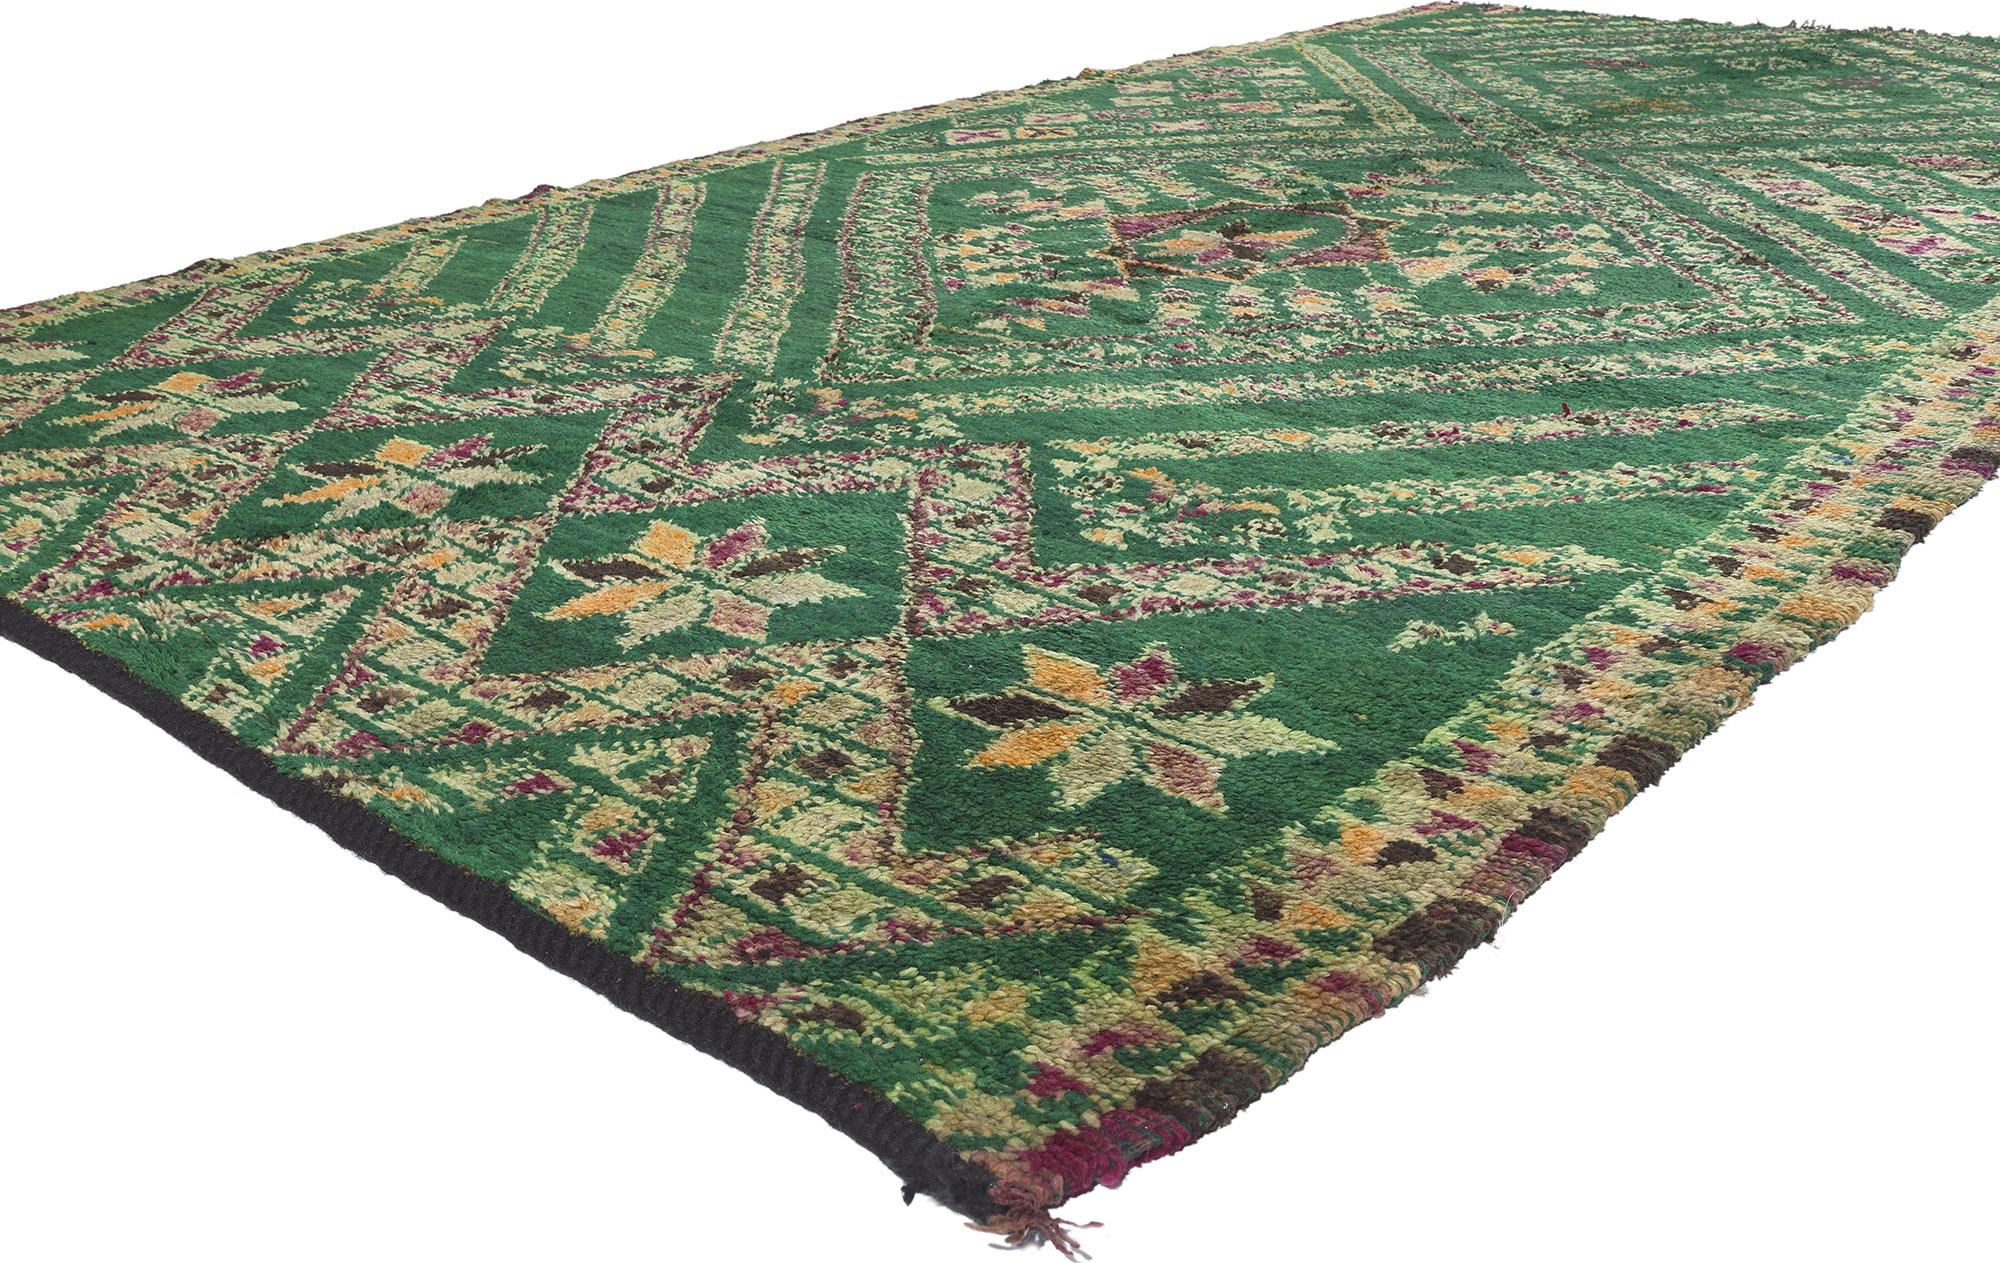 20124 Vintage Grün Beni MGuild Marokkanischer Teppich, 06'03 x 12'08. Tauchen Sie ein in die harmonische Umarmung des von der Natur inspirierten biophilen Designs, das nahtlos mit dem Boho-Chic dieses handgeknüpften marokkanischen Wollteppichs im